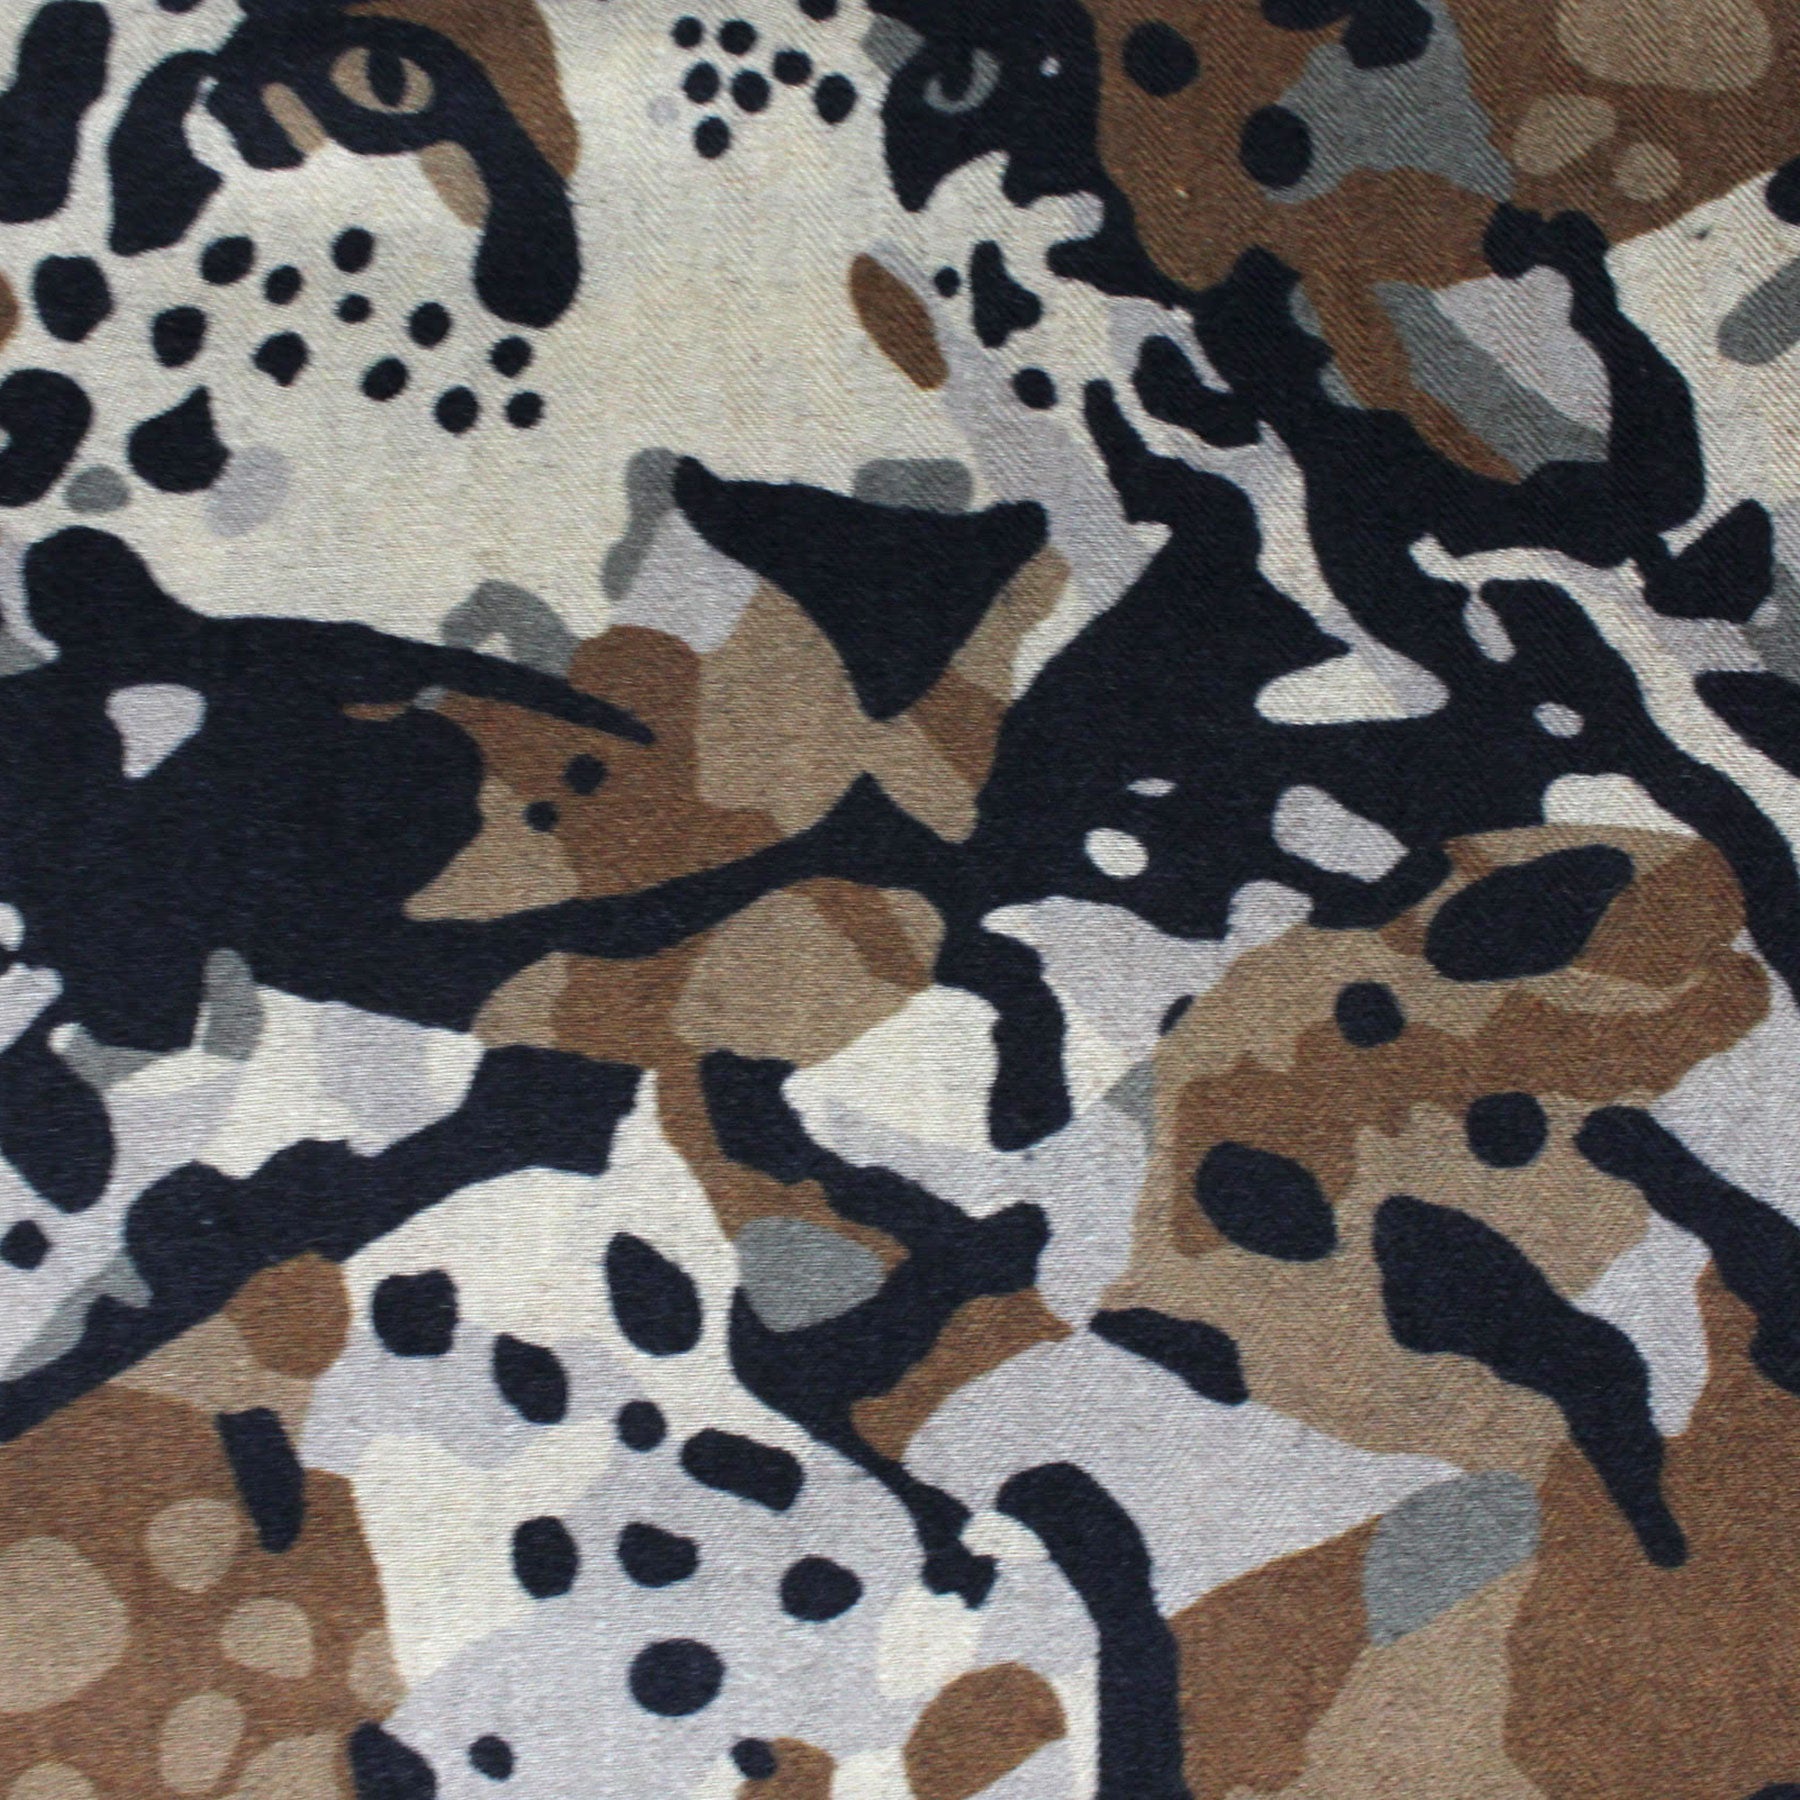 Salvatore Ferragamo Silk Scarf Black Gray Brown Tiger Design - Large 55" Square